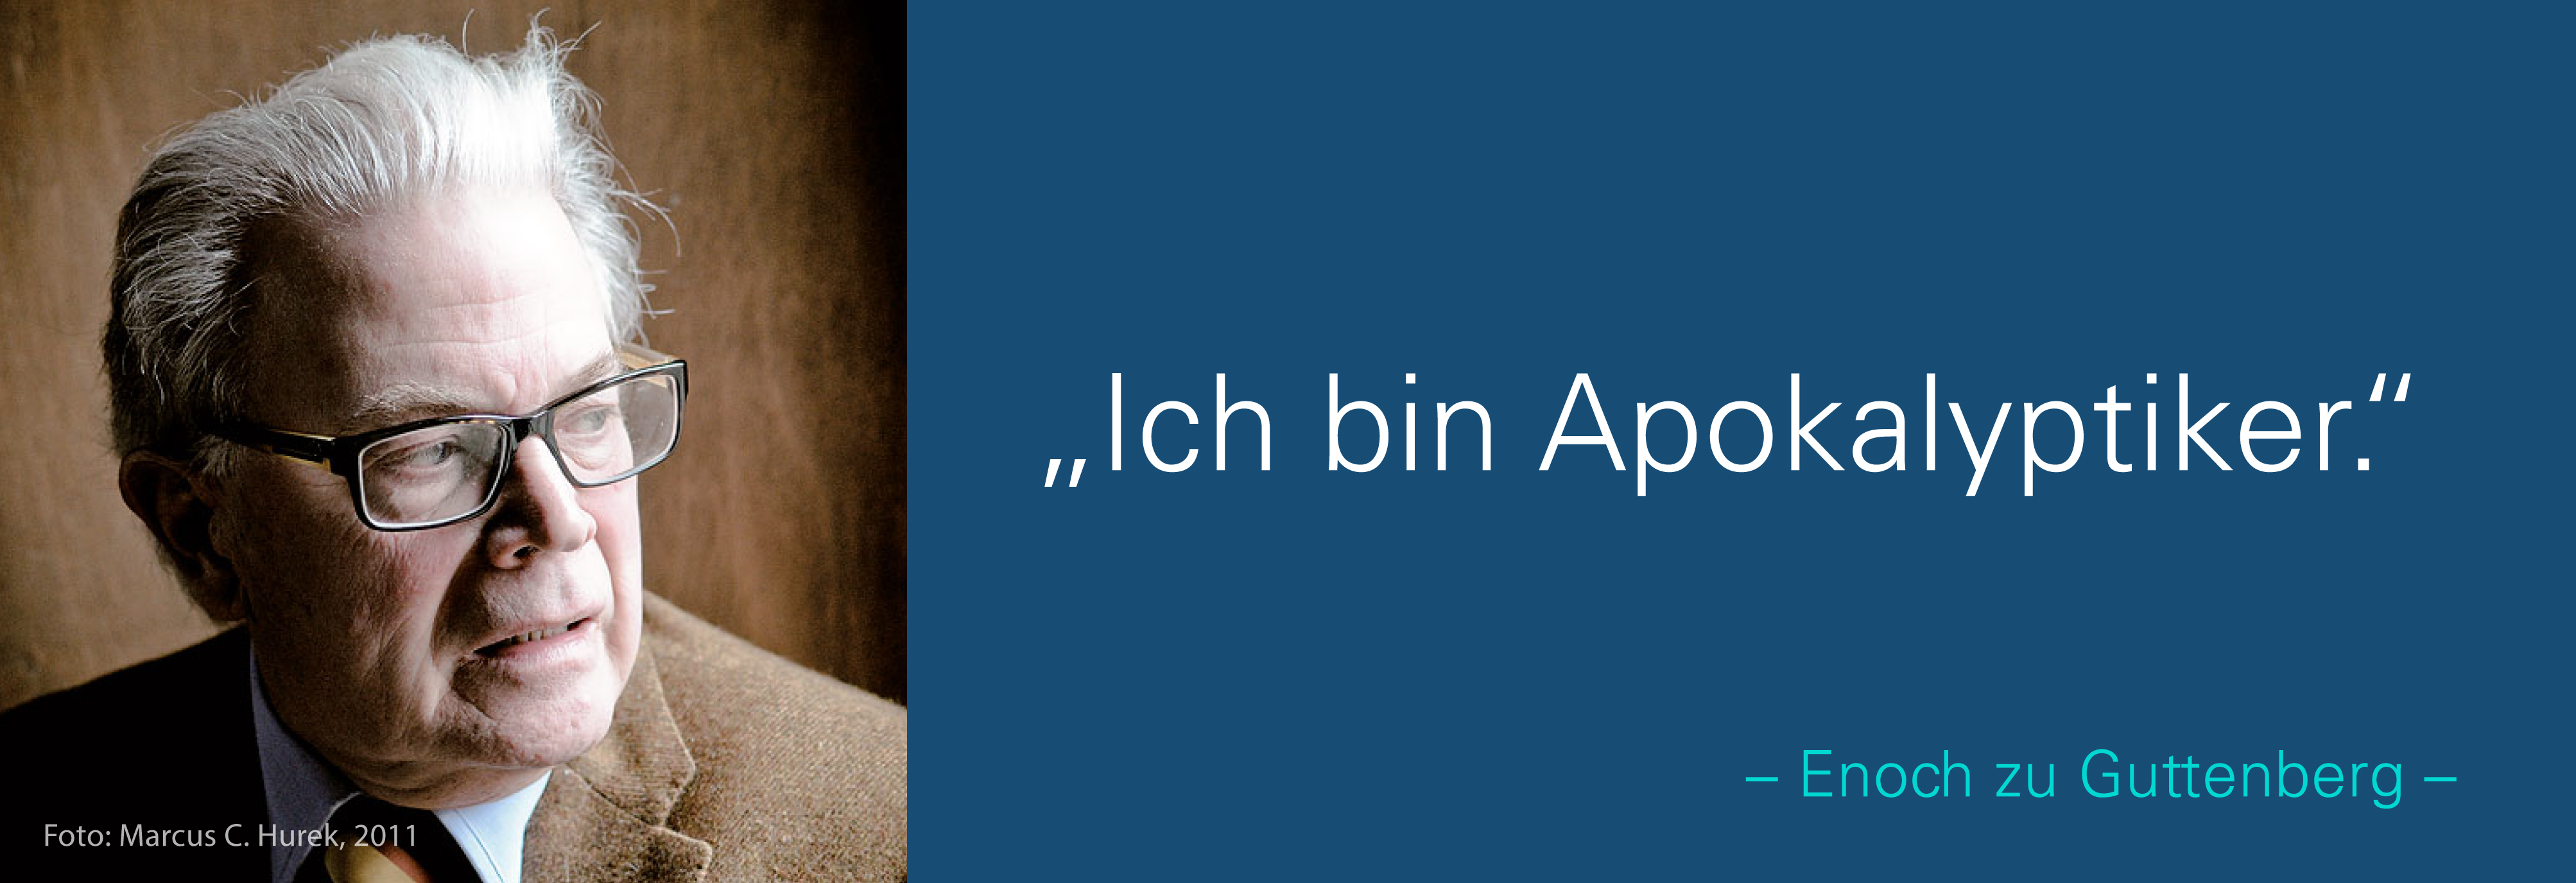 Portraitfoto von Enoch zu Guttenberg mit seinem Zitat Ich bin Apokalyptiker.